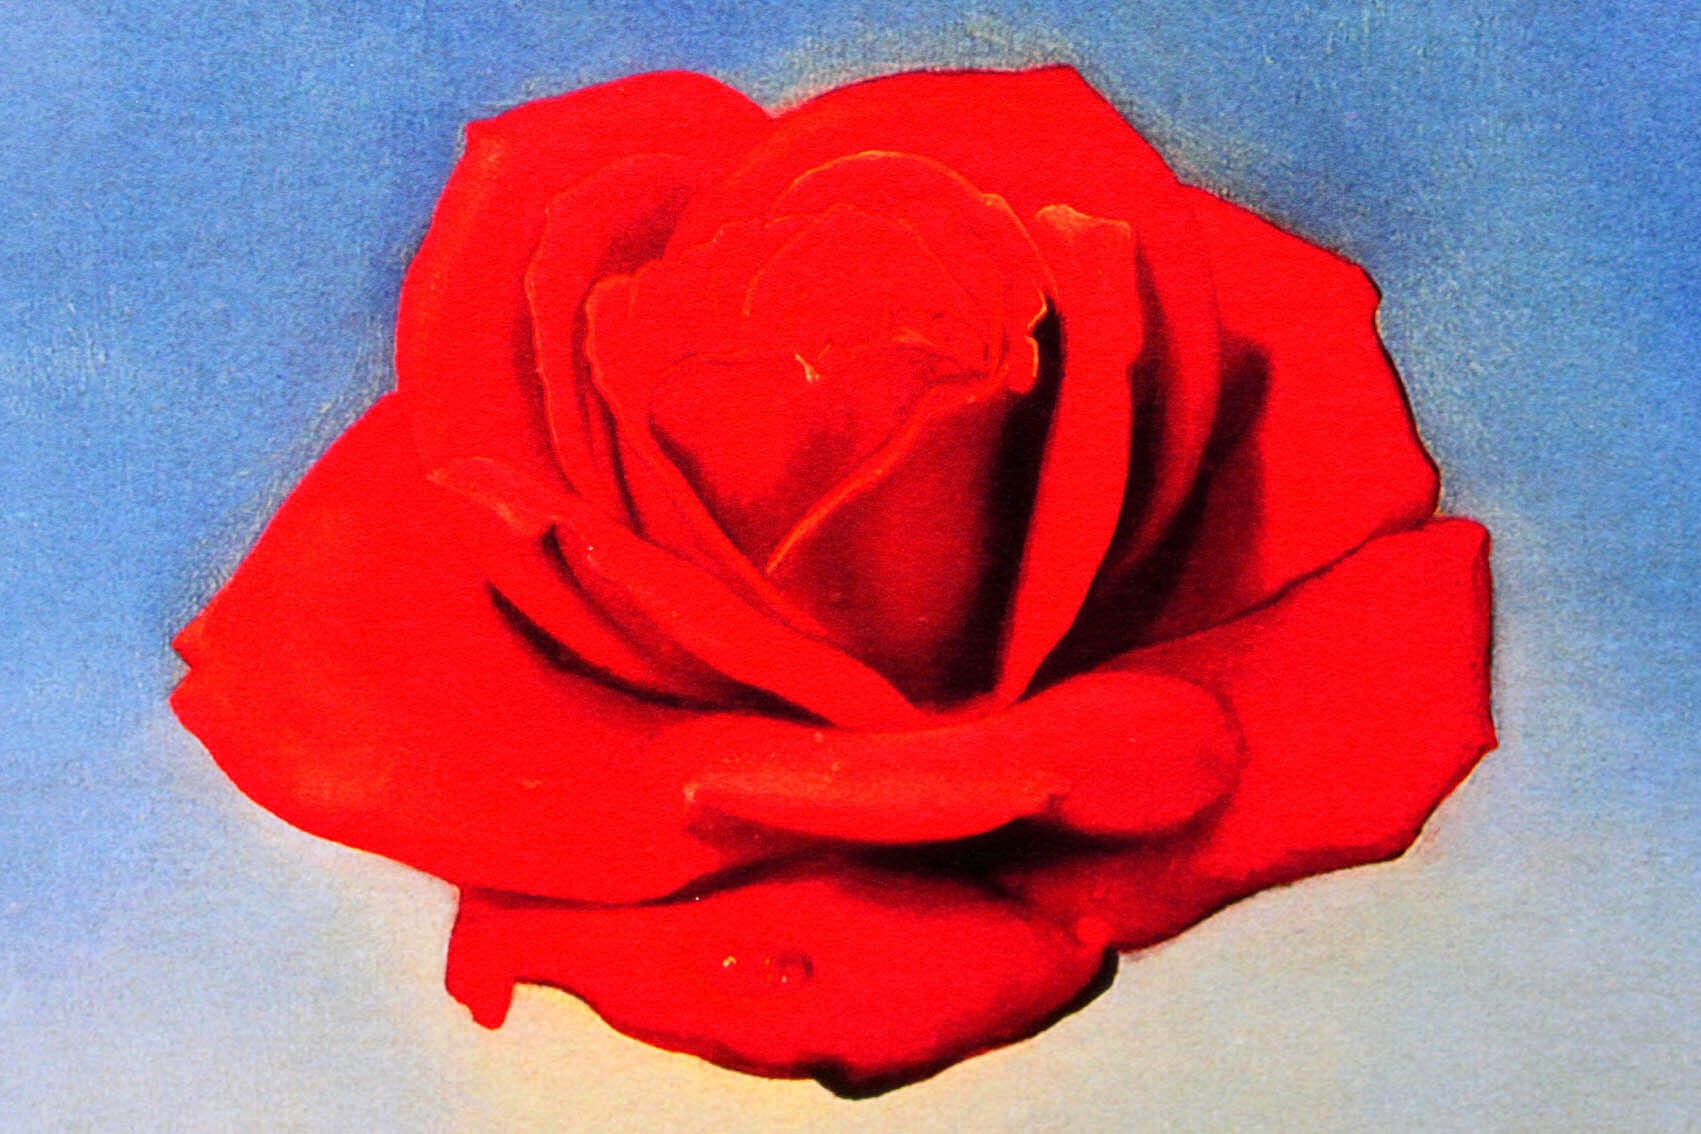 サルバドール・ダリ「瞑想するバラ」作品証明書・展示用フック・限定375部エディション付複製画ジークレ